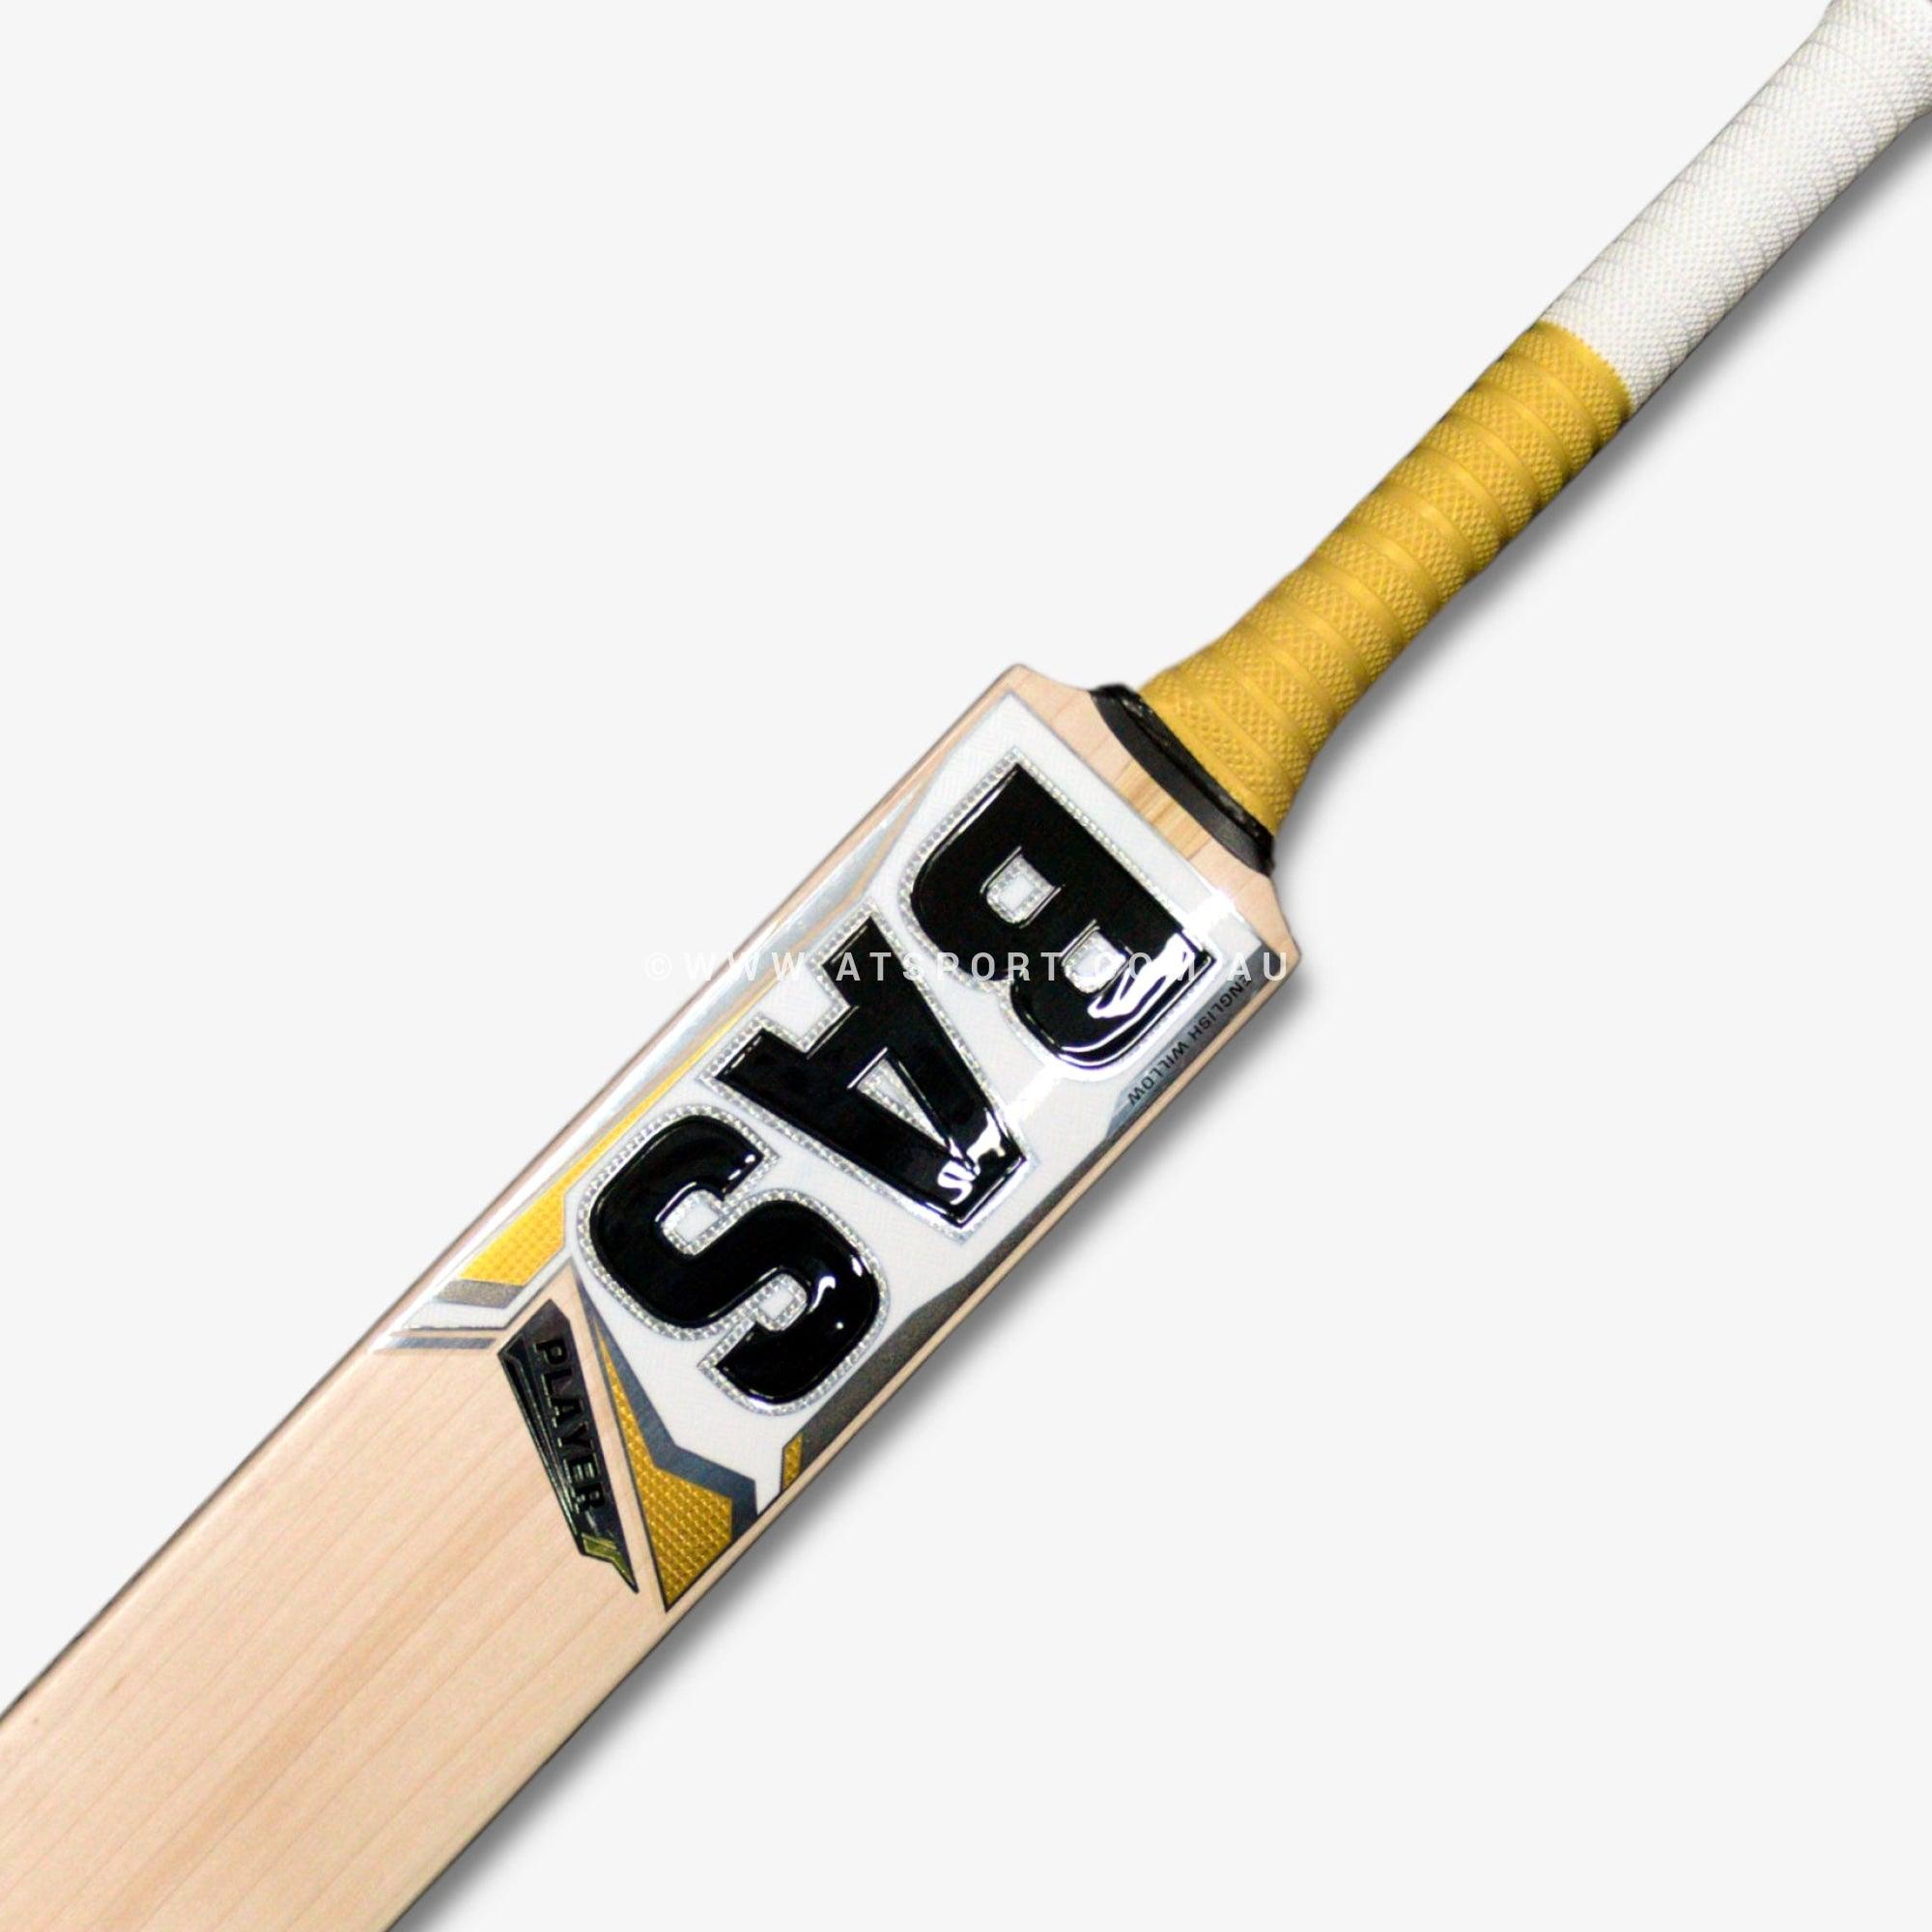 BAS Player English Willow Cricket Bat - SH - AT Sports